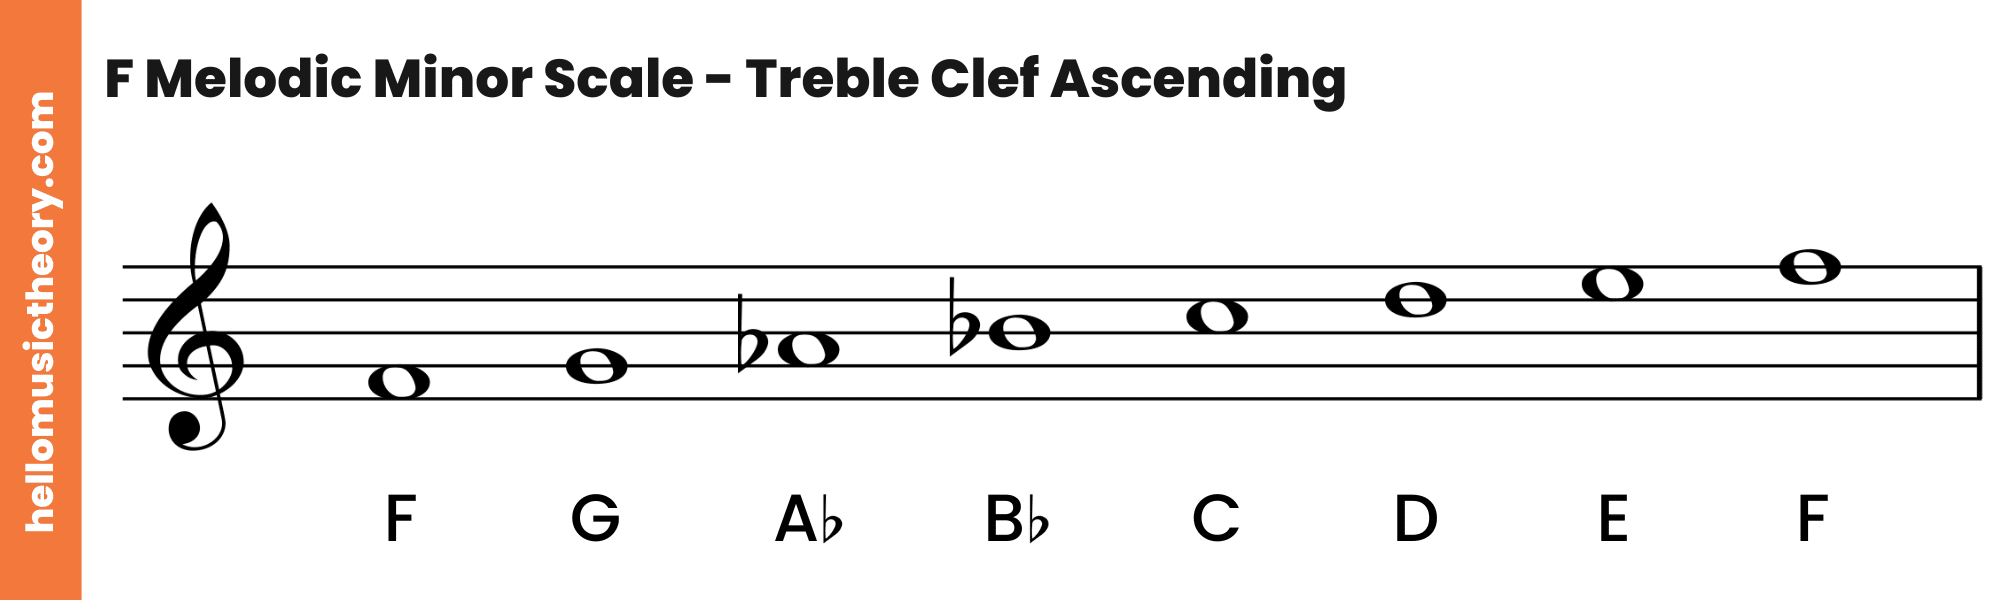 F Melodic Minor Scale Treble Clef Ascending